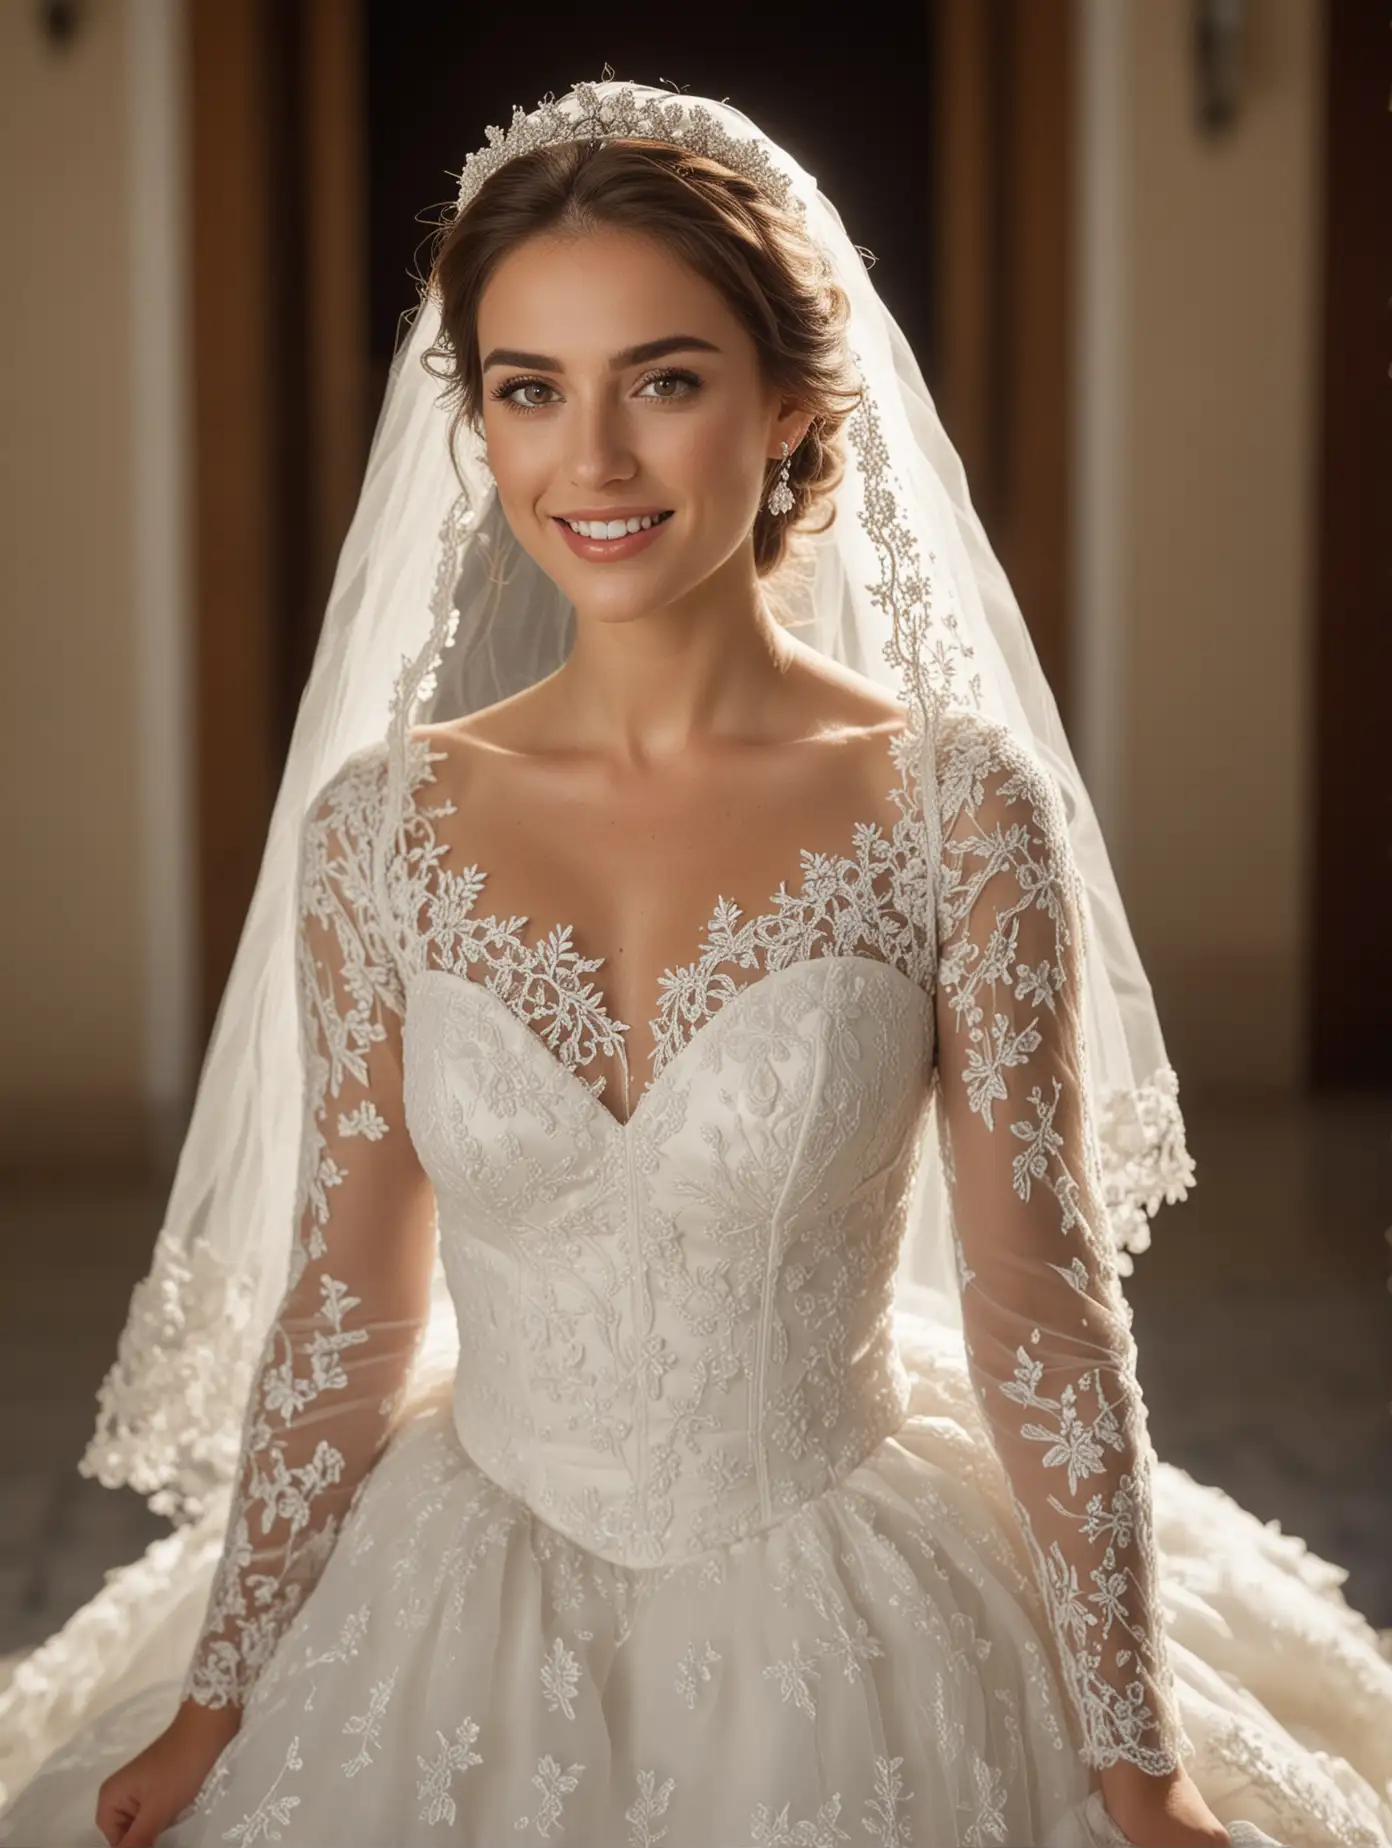 Elegant Spanish Bride with Joyful Smile and Exquisite Lace Wedding Dress